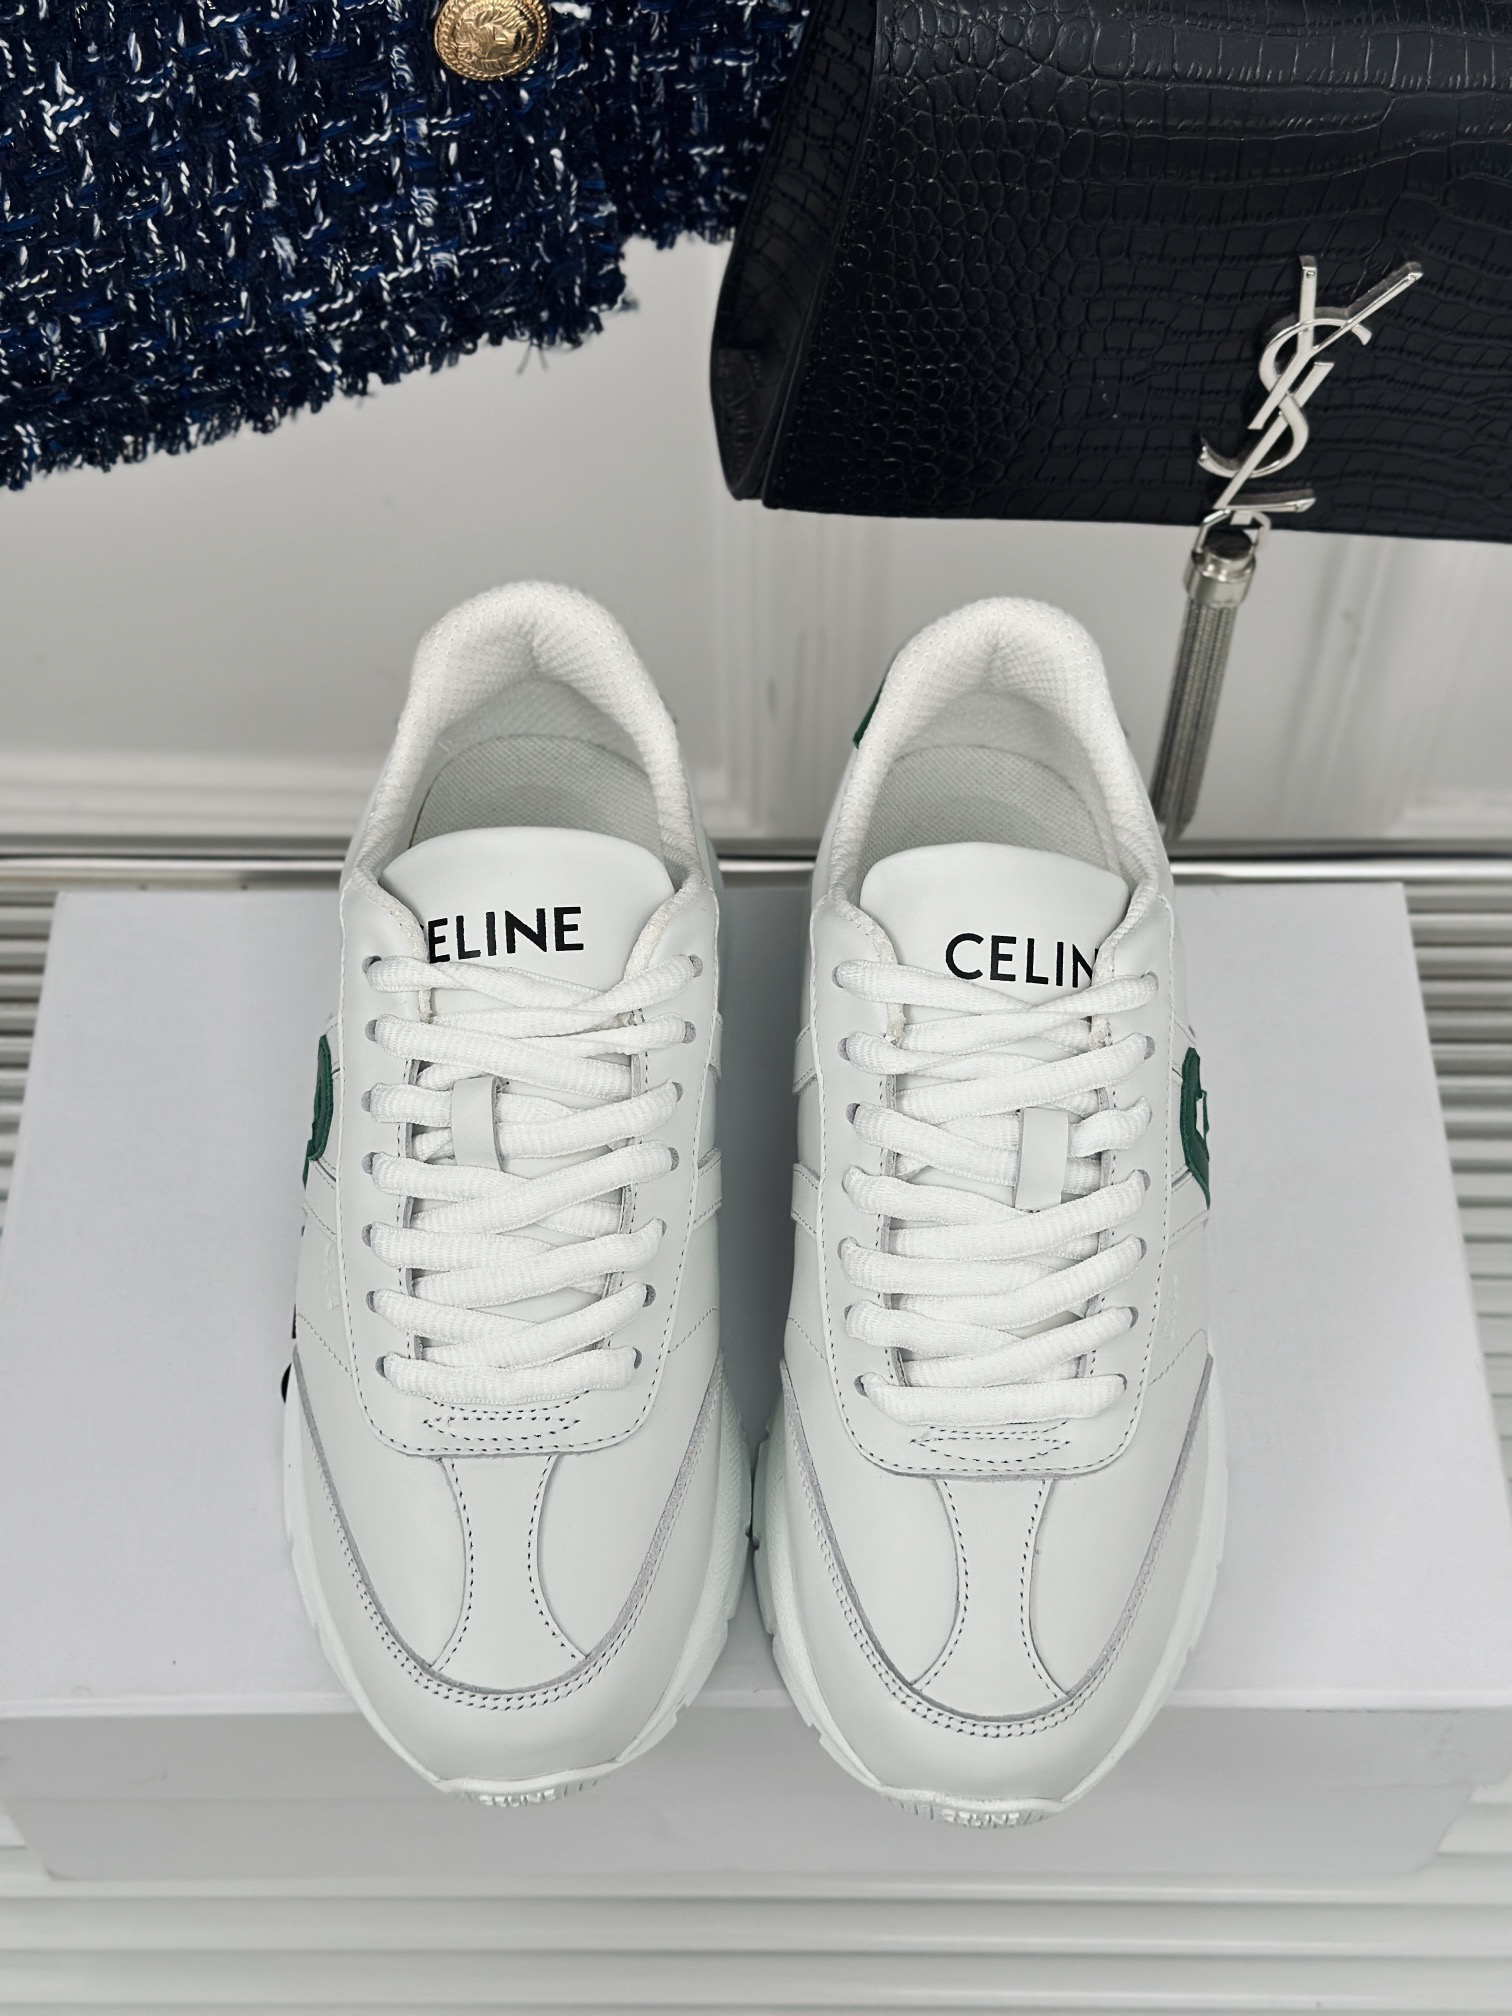 Celine赛琳24/AW新品简约时尚休闲运动鞋老爹鞋️最多网红上脚的一双休闲鞋曝光频率比任何一双都高！